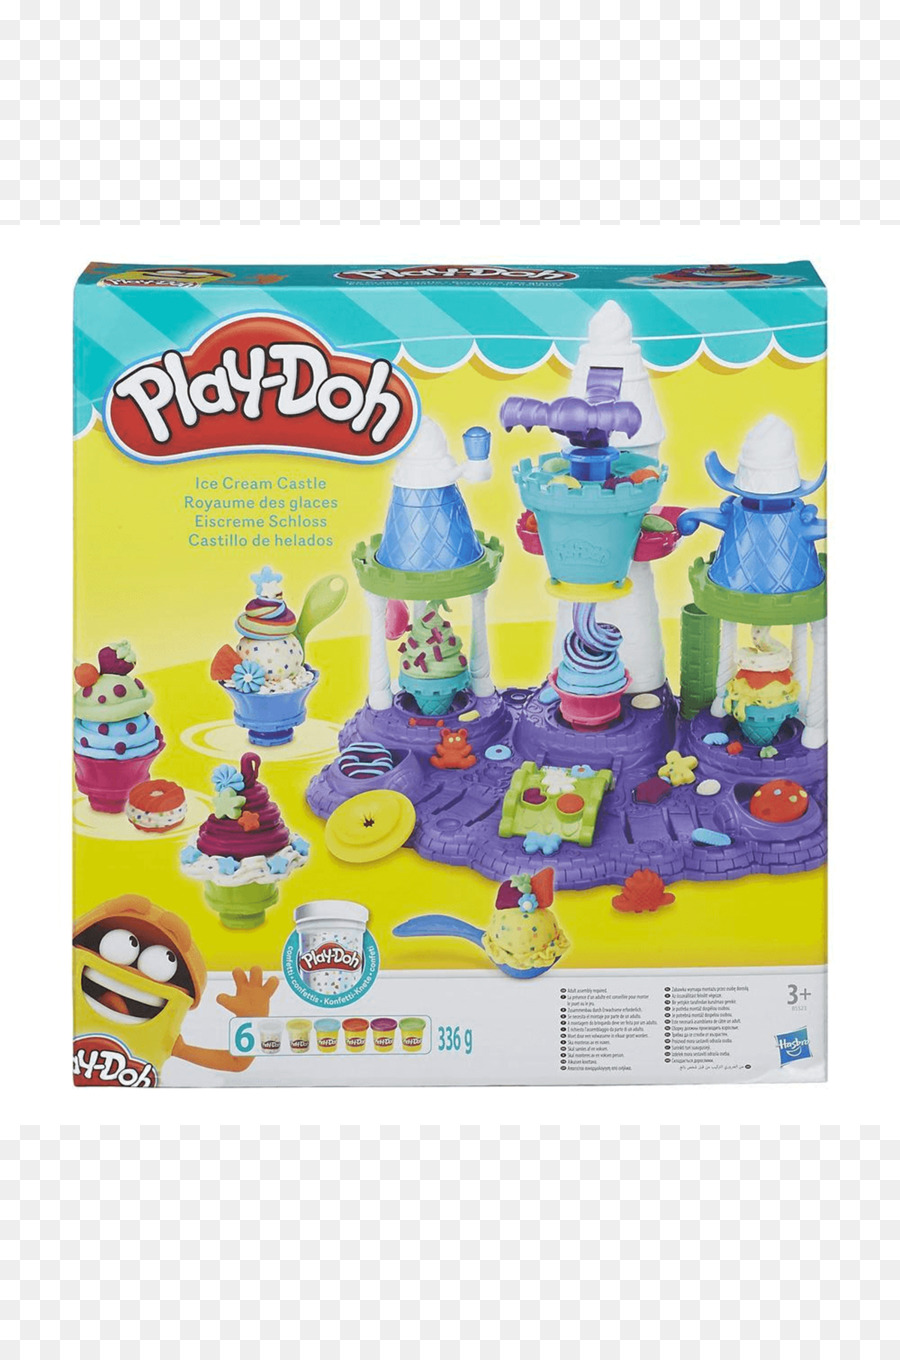 Play-Doh Amazon.com gelato di Giocattoli Hamleys - gelato